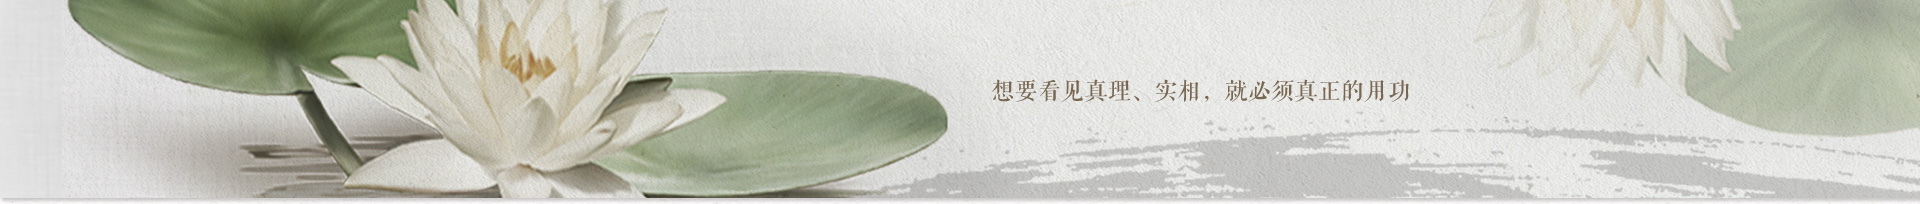 温州仙岩寺短期出家及正念动中禅第23期禅修活动报道